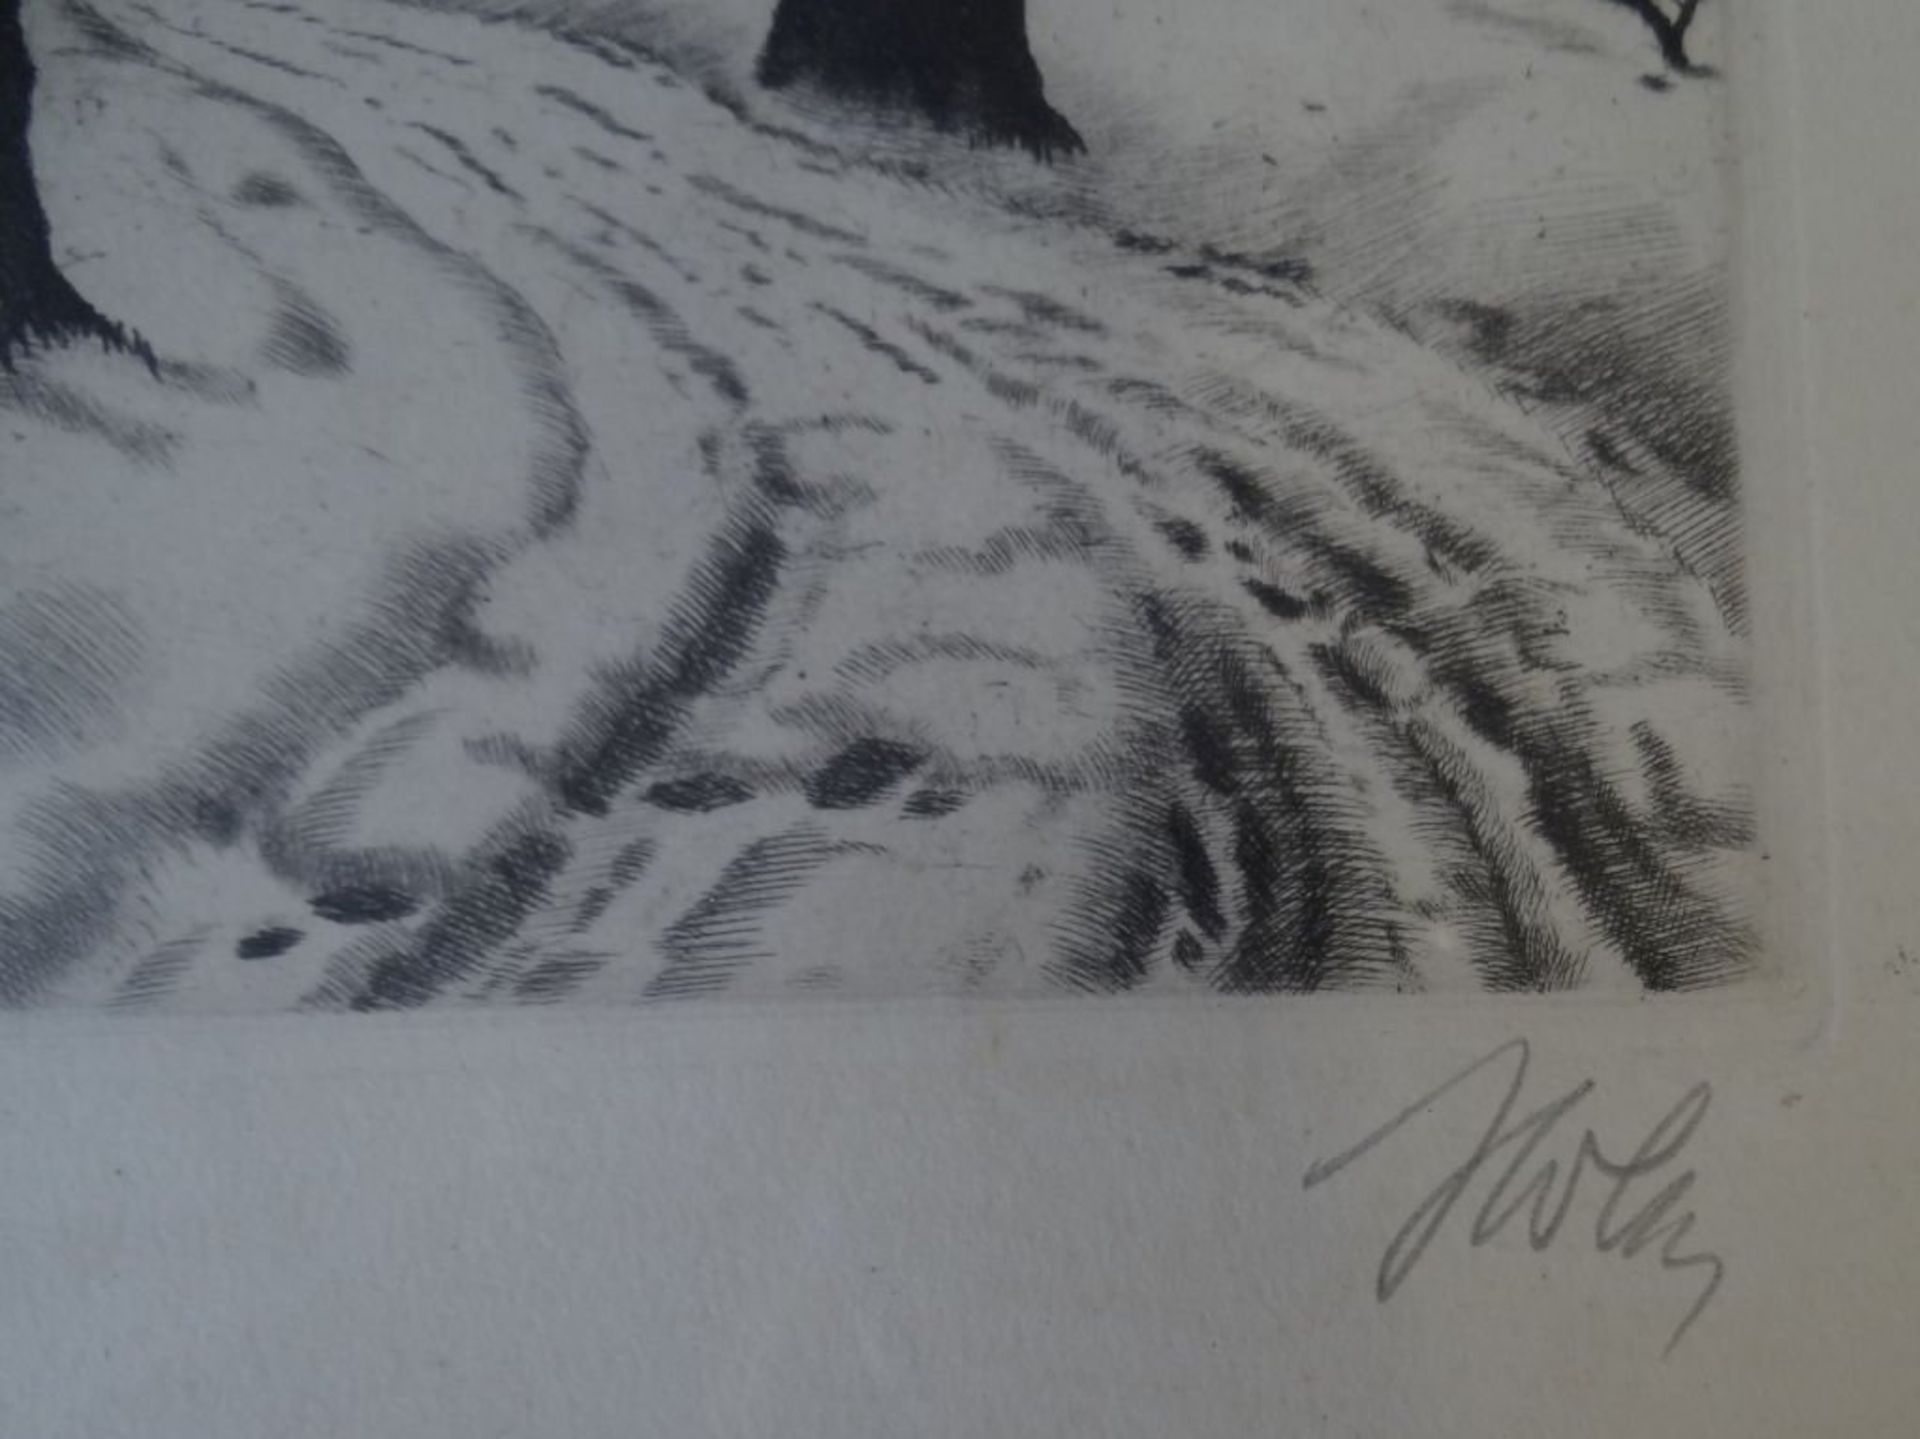 unleserl. sign. Radierung "Mondnacht im Winterwald", ger/glas, RG 35x28 cm, verso Widmung von 1941 - Image 5 of 7